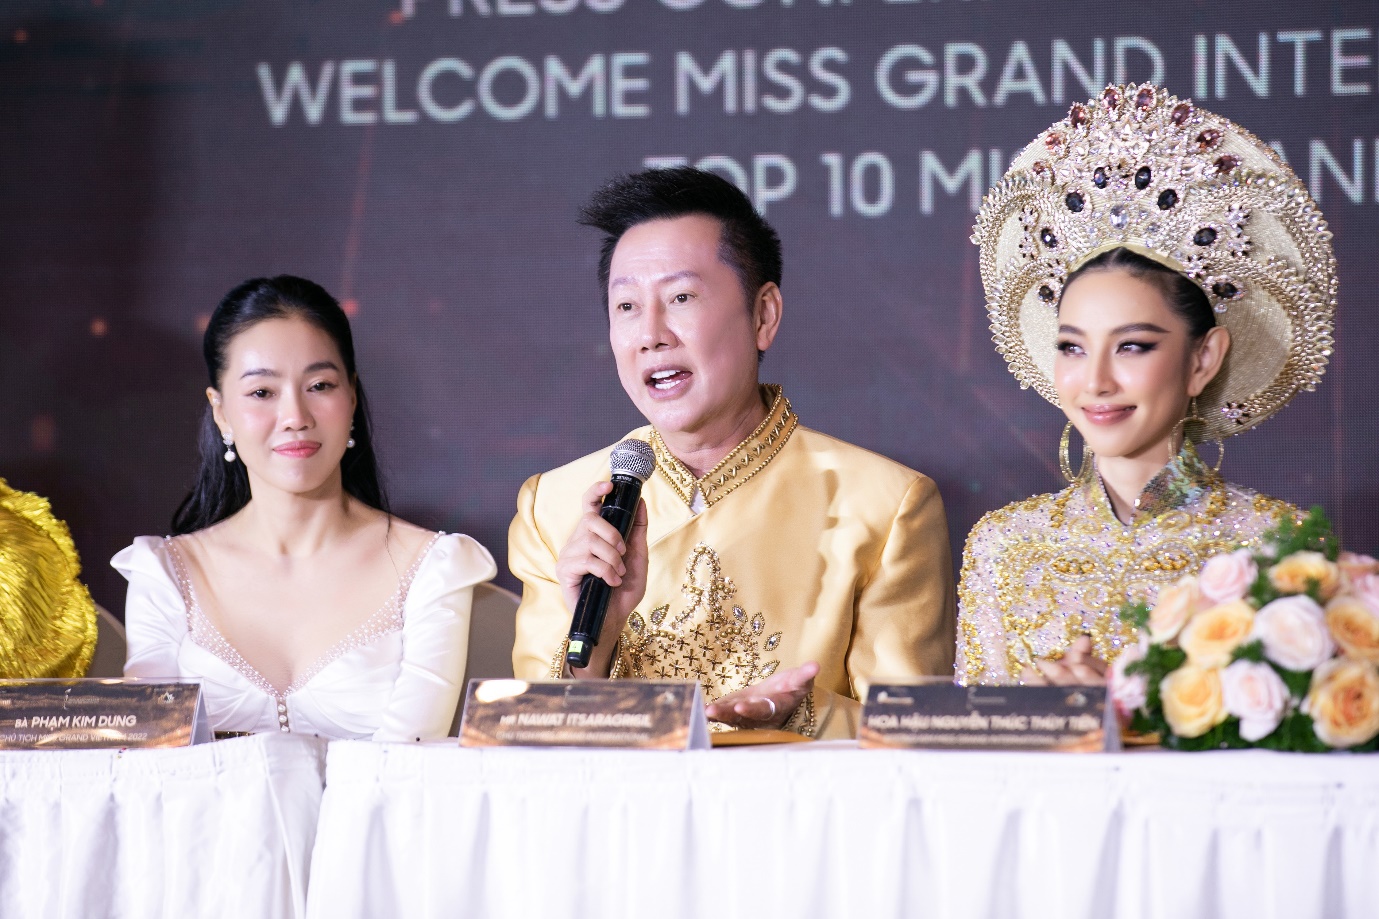 Những điều mới lạ giúp Miss Grand Vietnam trở thành cuộc thi nhan sắc đáng mong đợi - Ảnh 4.